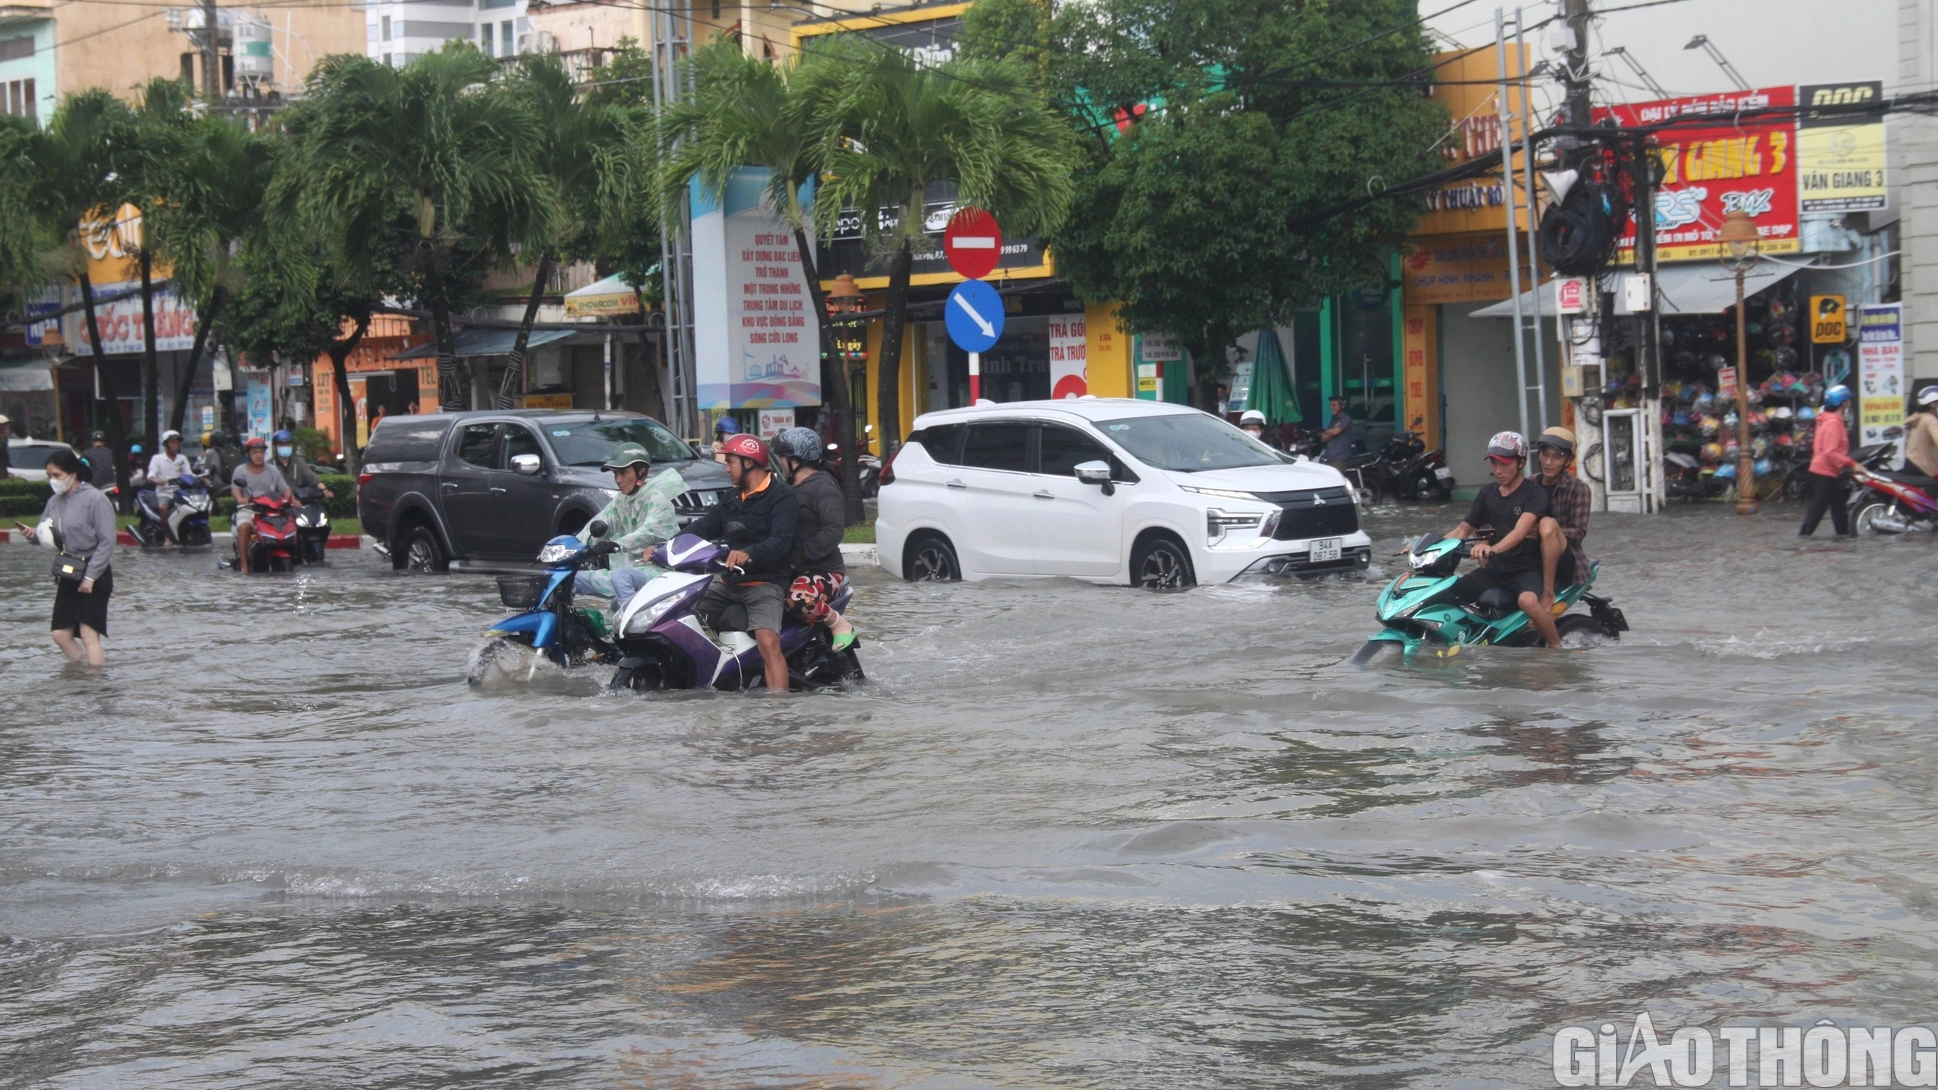 Người dân Bạc Liêu bì bõm dẫn xe lội nước sau cơn mưa lớn kéo dài - Ảnh 1.